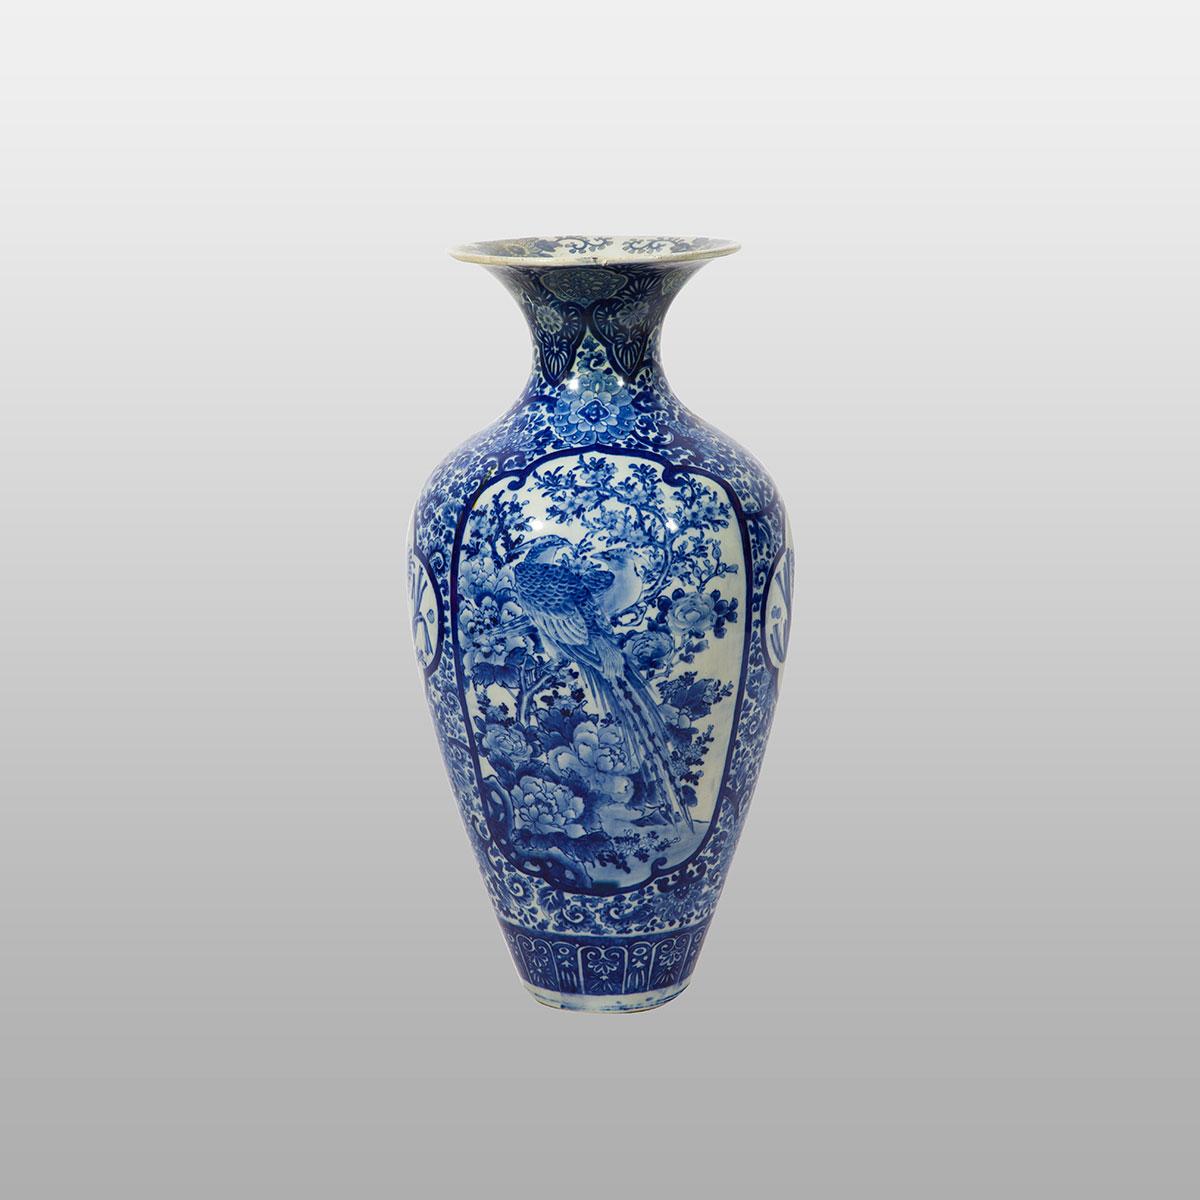 Large Imari Blue and White Vase, Late 19th Century